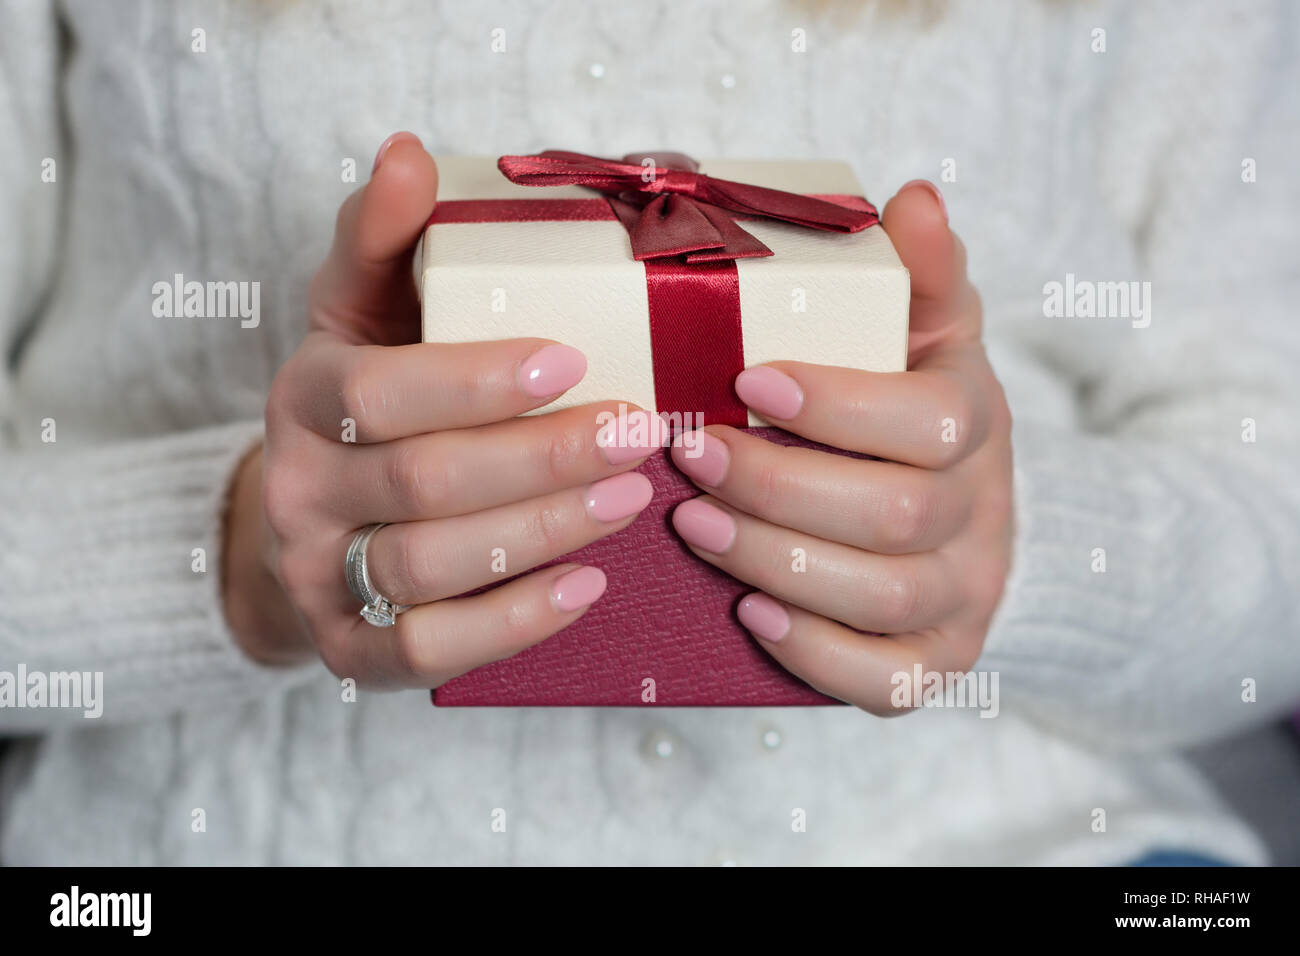 Giovani mani femminili con baby colore rosa chiodi polacco su dita azienda confezione regalo rossa. Manicure e il giorno di San Valentino del concetto. Close up, il fuoco selettivo Foto Stock